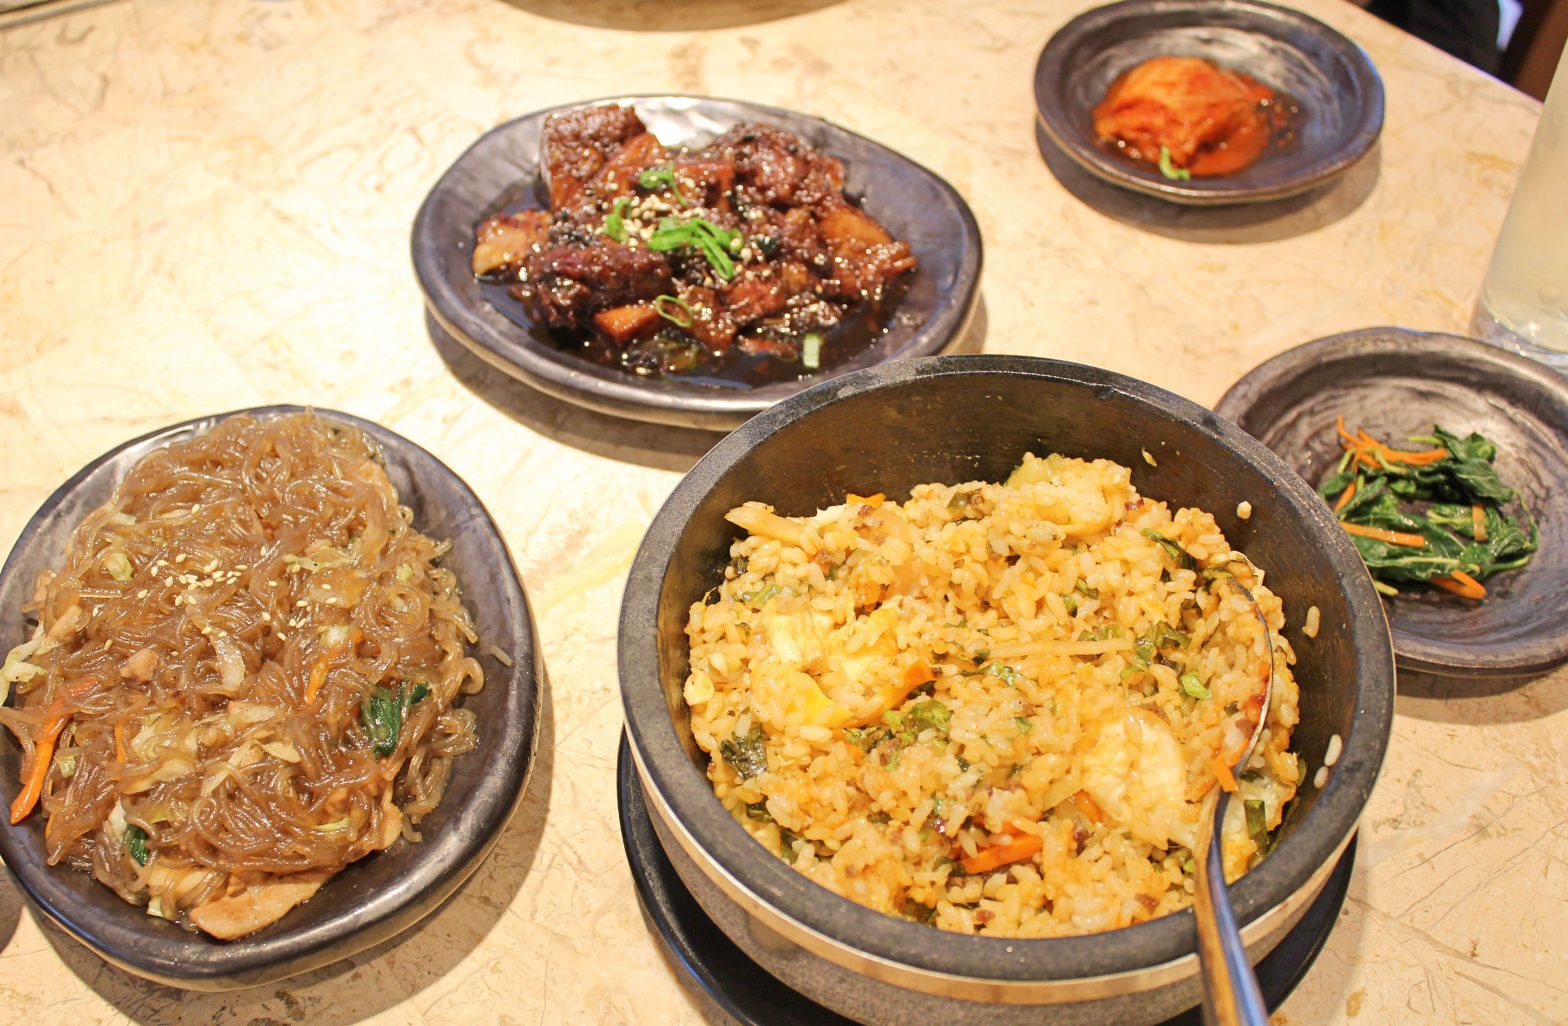 Kimstaurant brings taste of Korea to Cebu